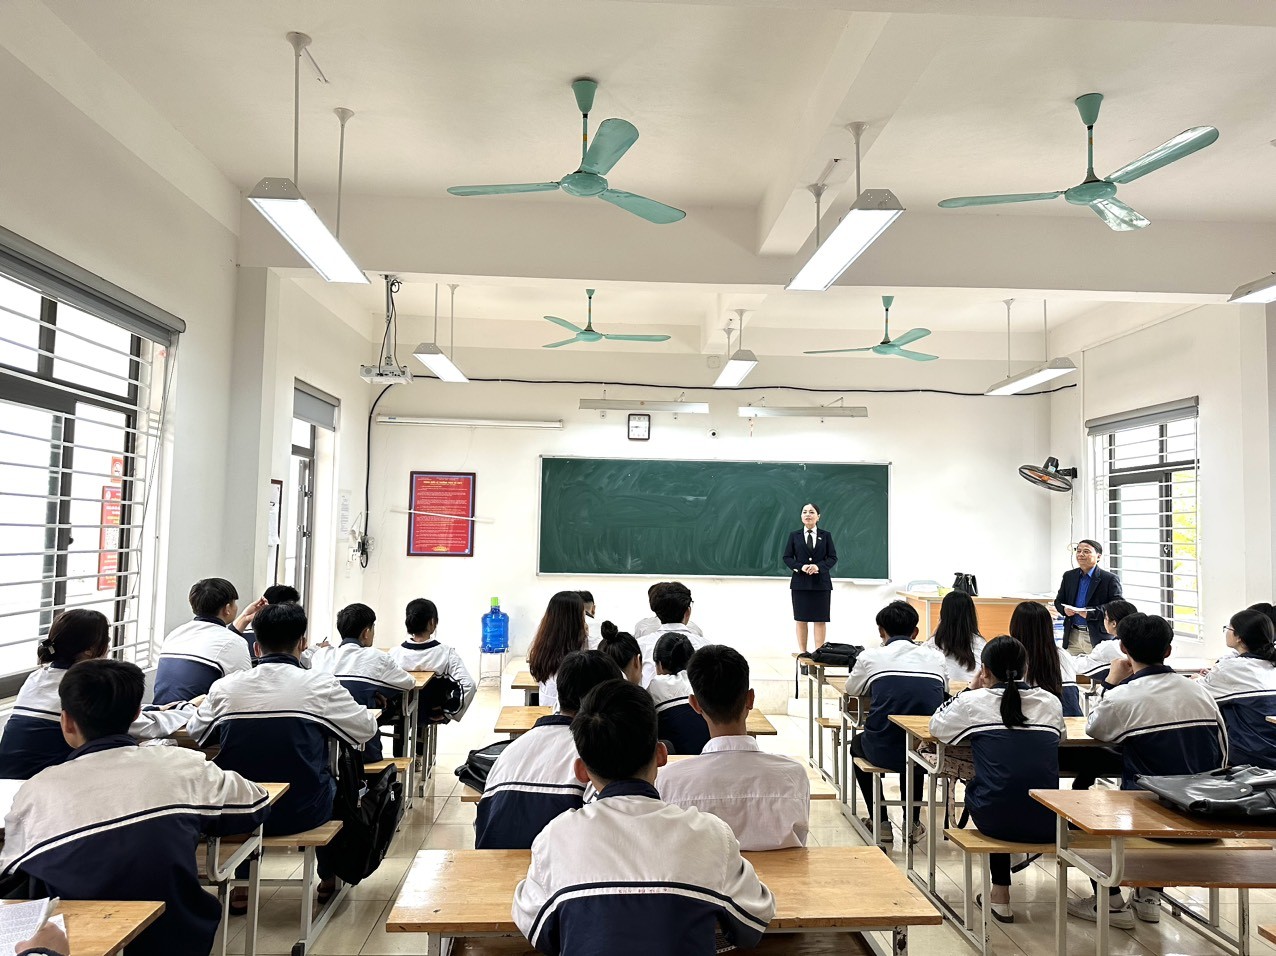 Trung tâm Đào tạo và Cung ứng nhân lực hàng không cung cấp thông tin hữu ích về việc làm cho gần 300 em học sinh trường THPT Trần Hưng Đạo Tam Dương Vĩnh Phúc